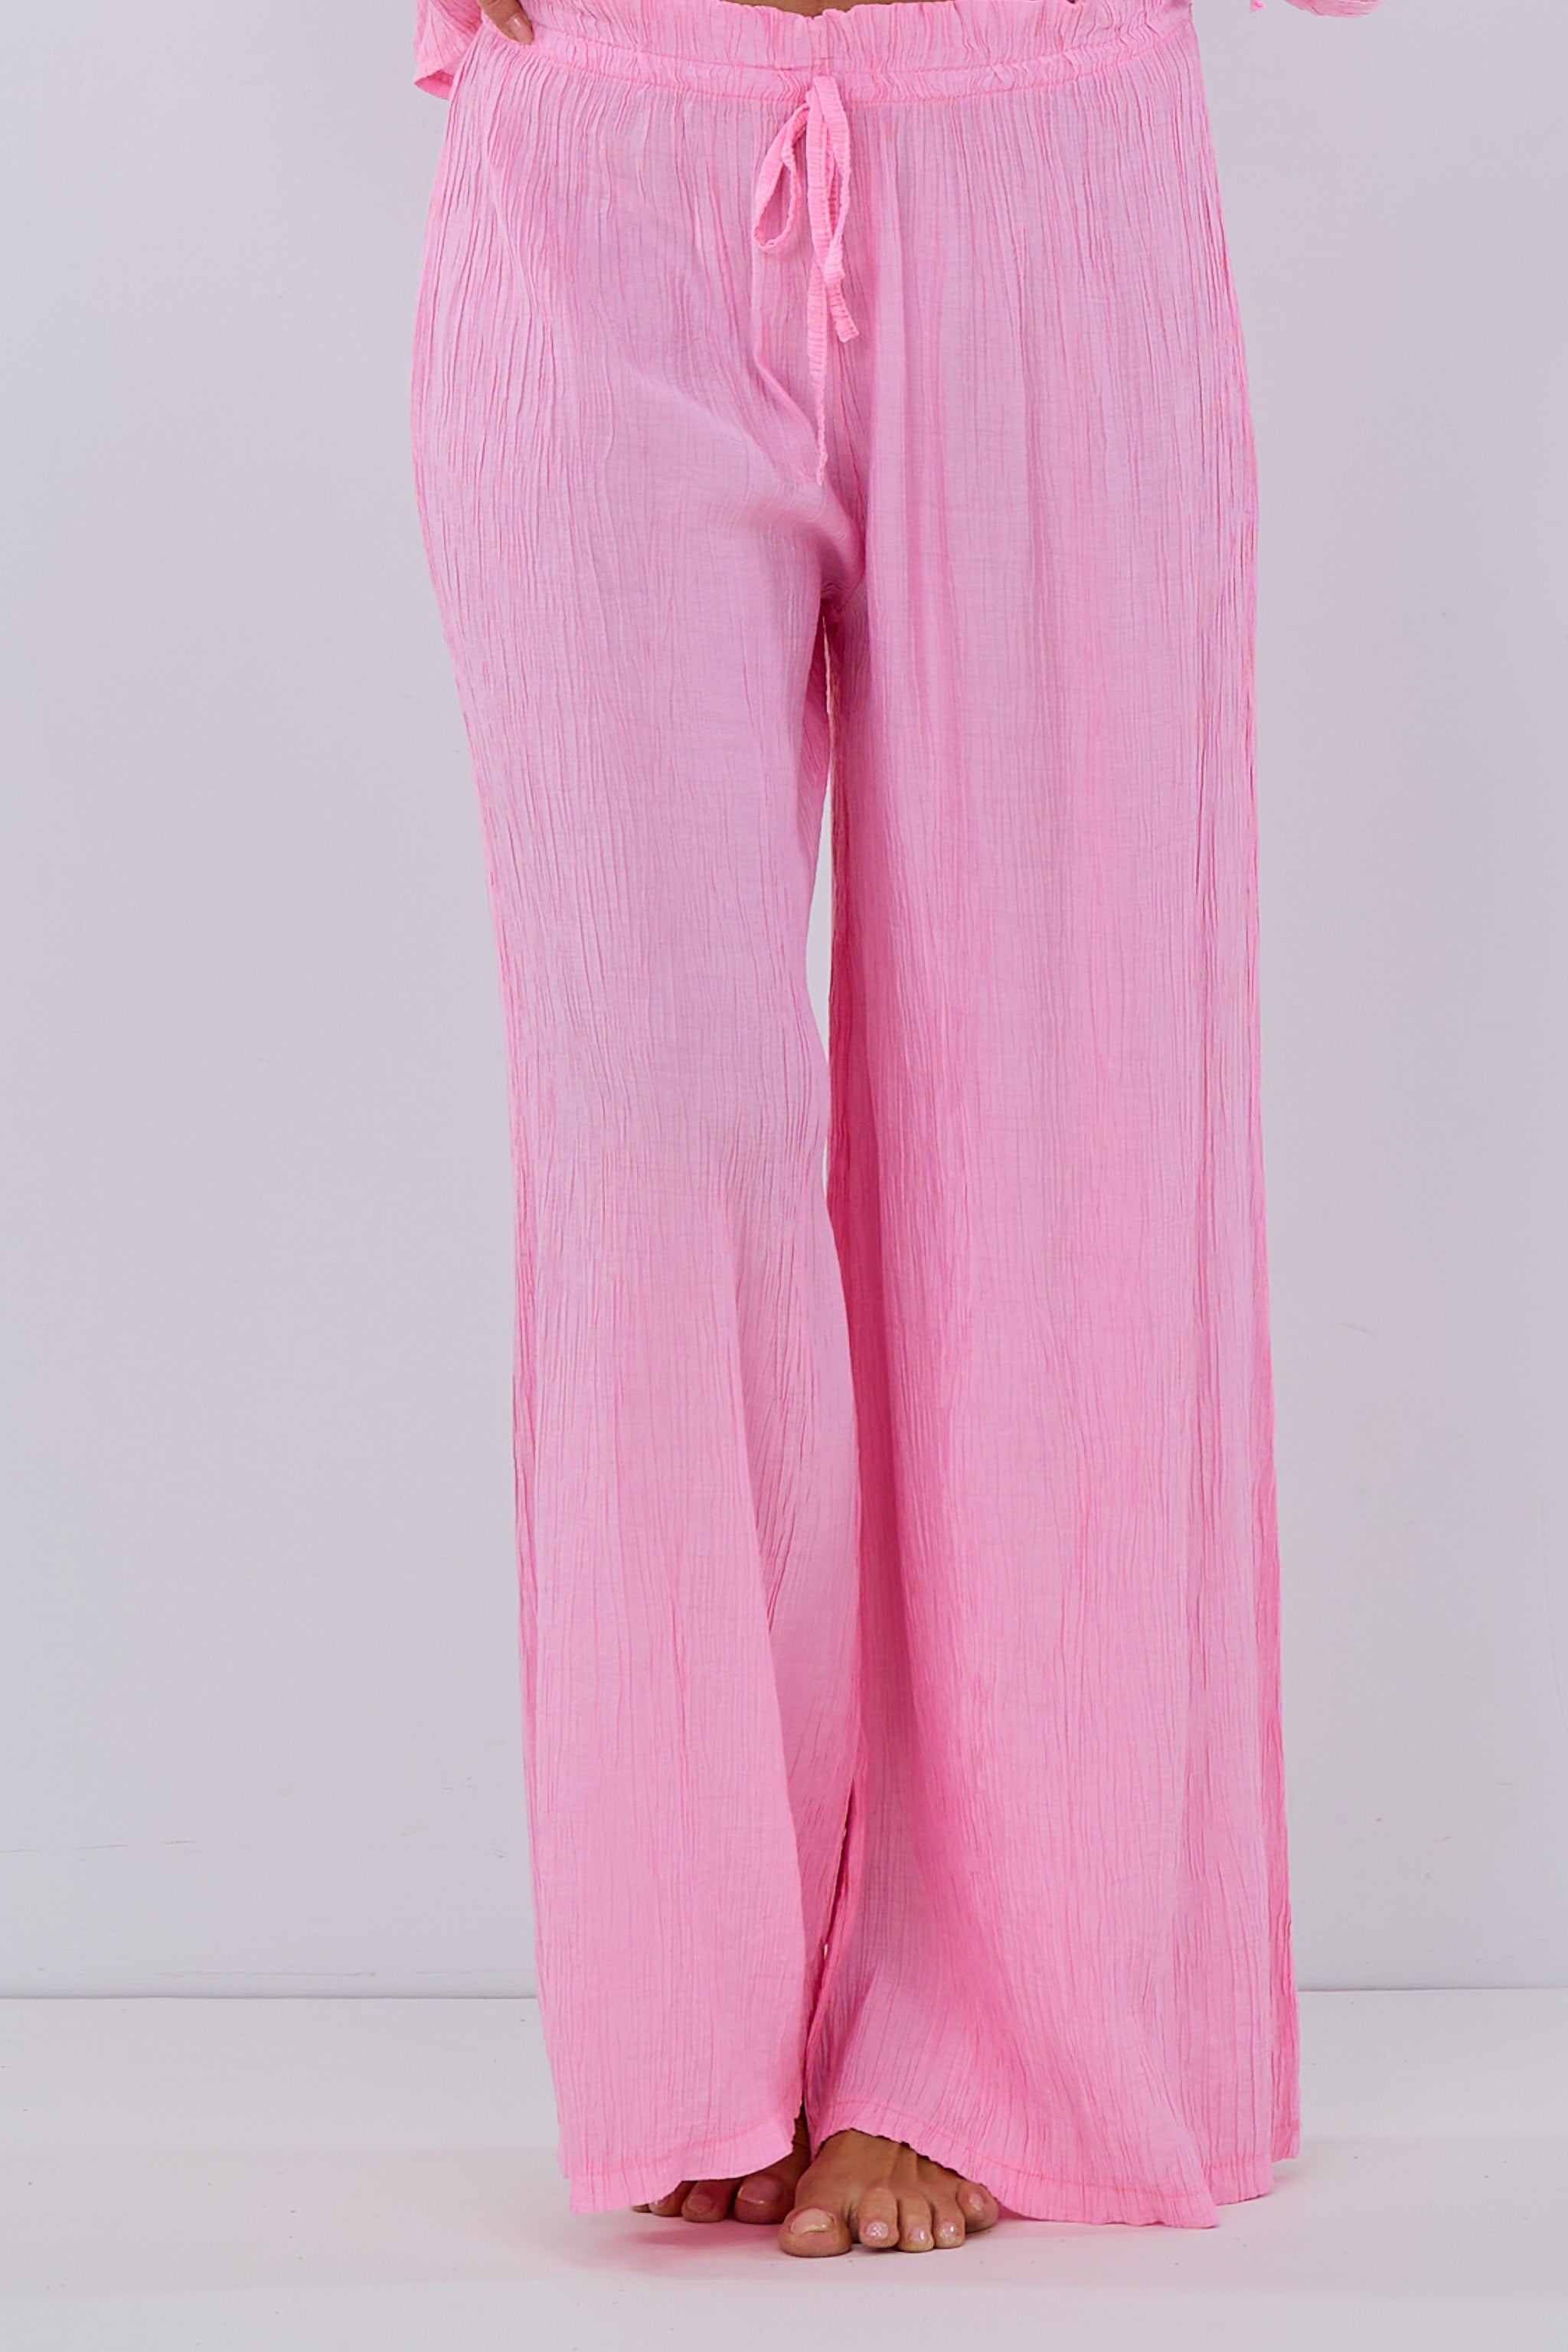 Damen Hose aus Crinkle Stoff rosa von Trends & Lifestyle